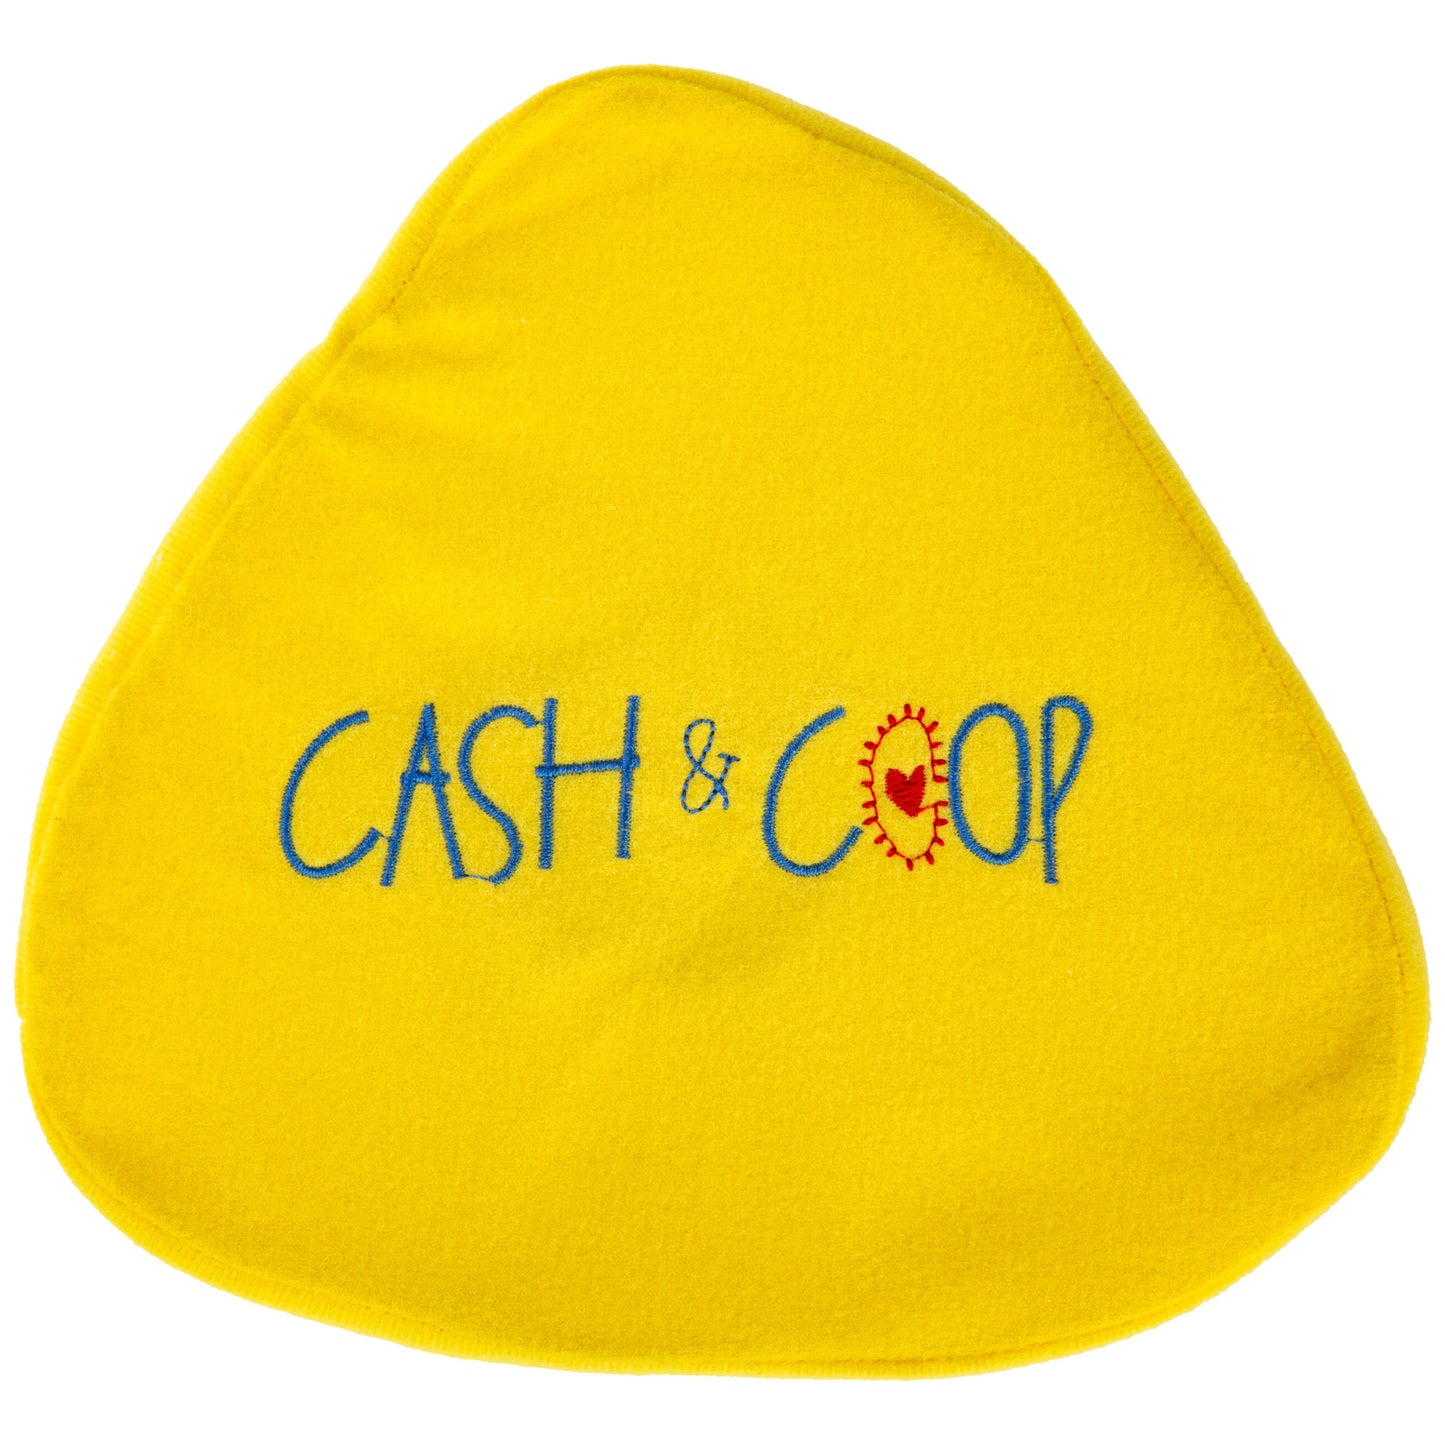 Cash & Coop Backpack Dog Toy